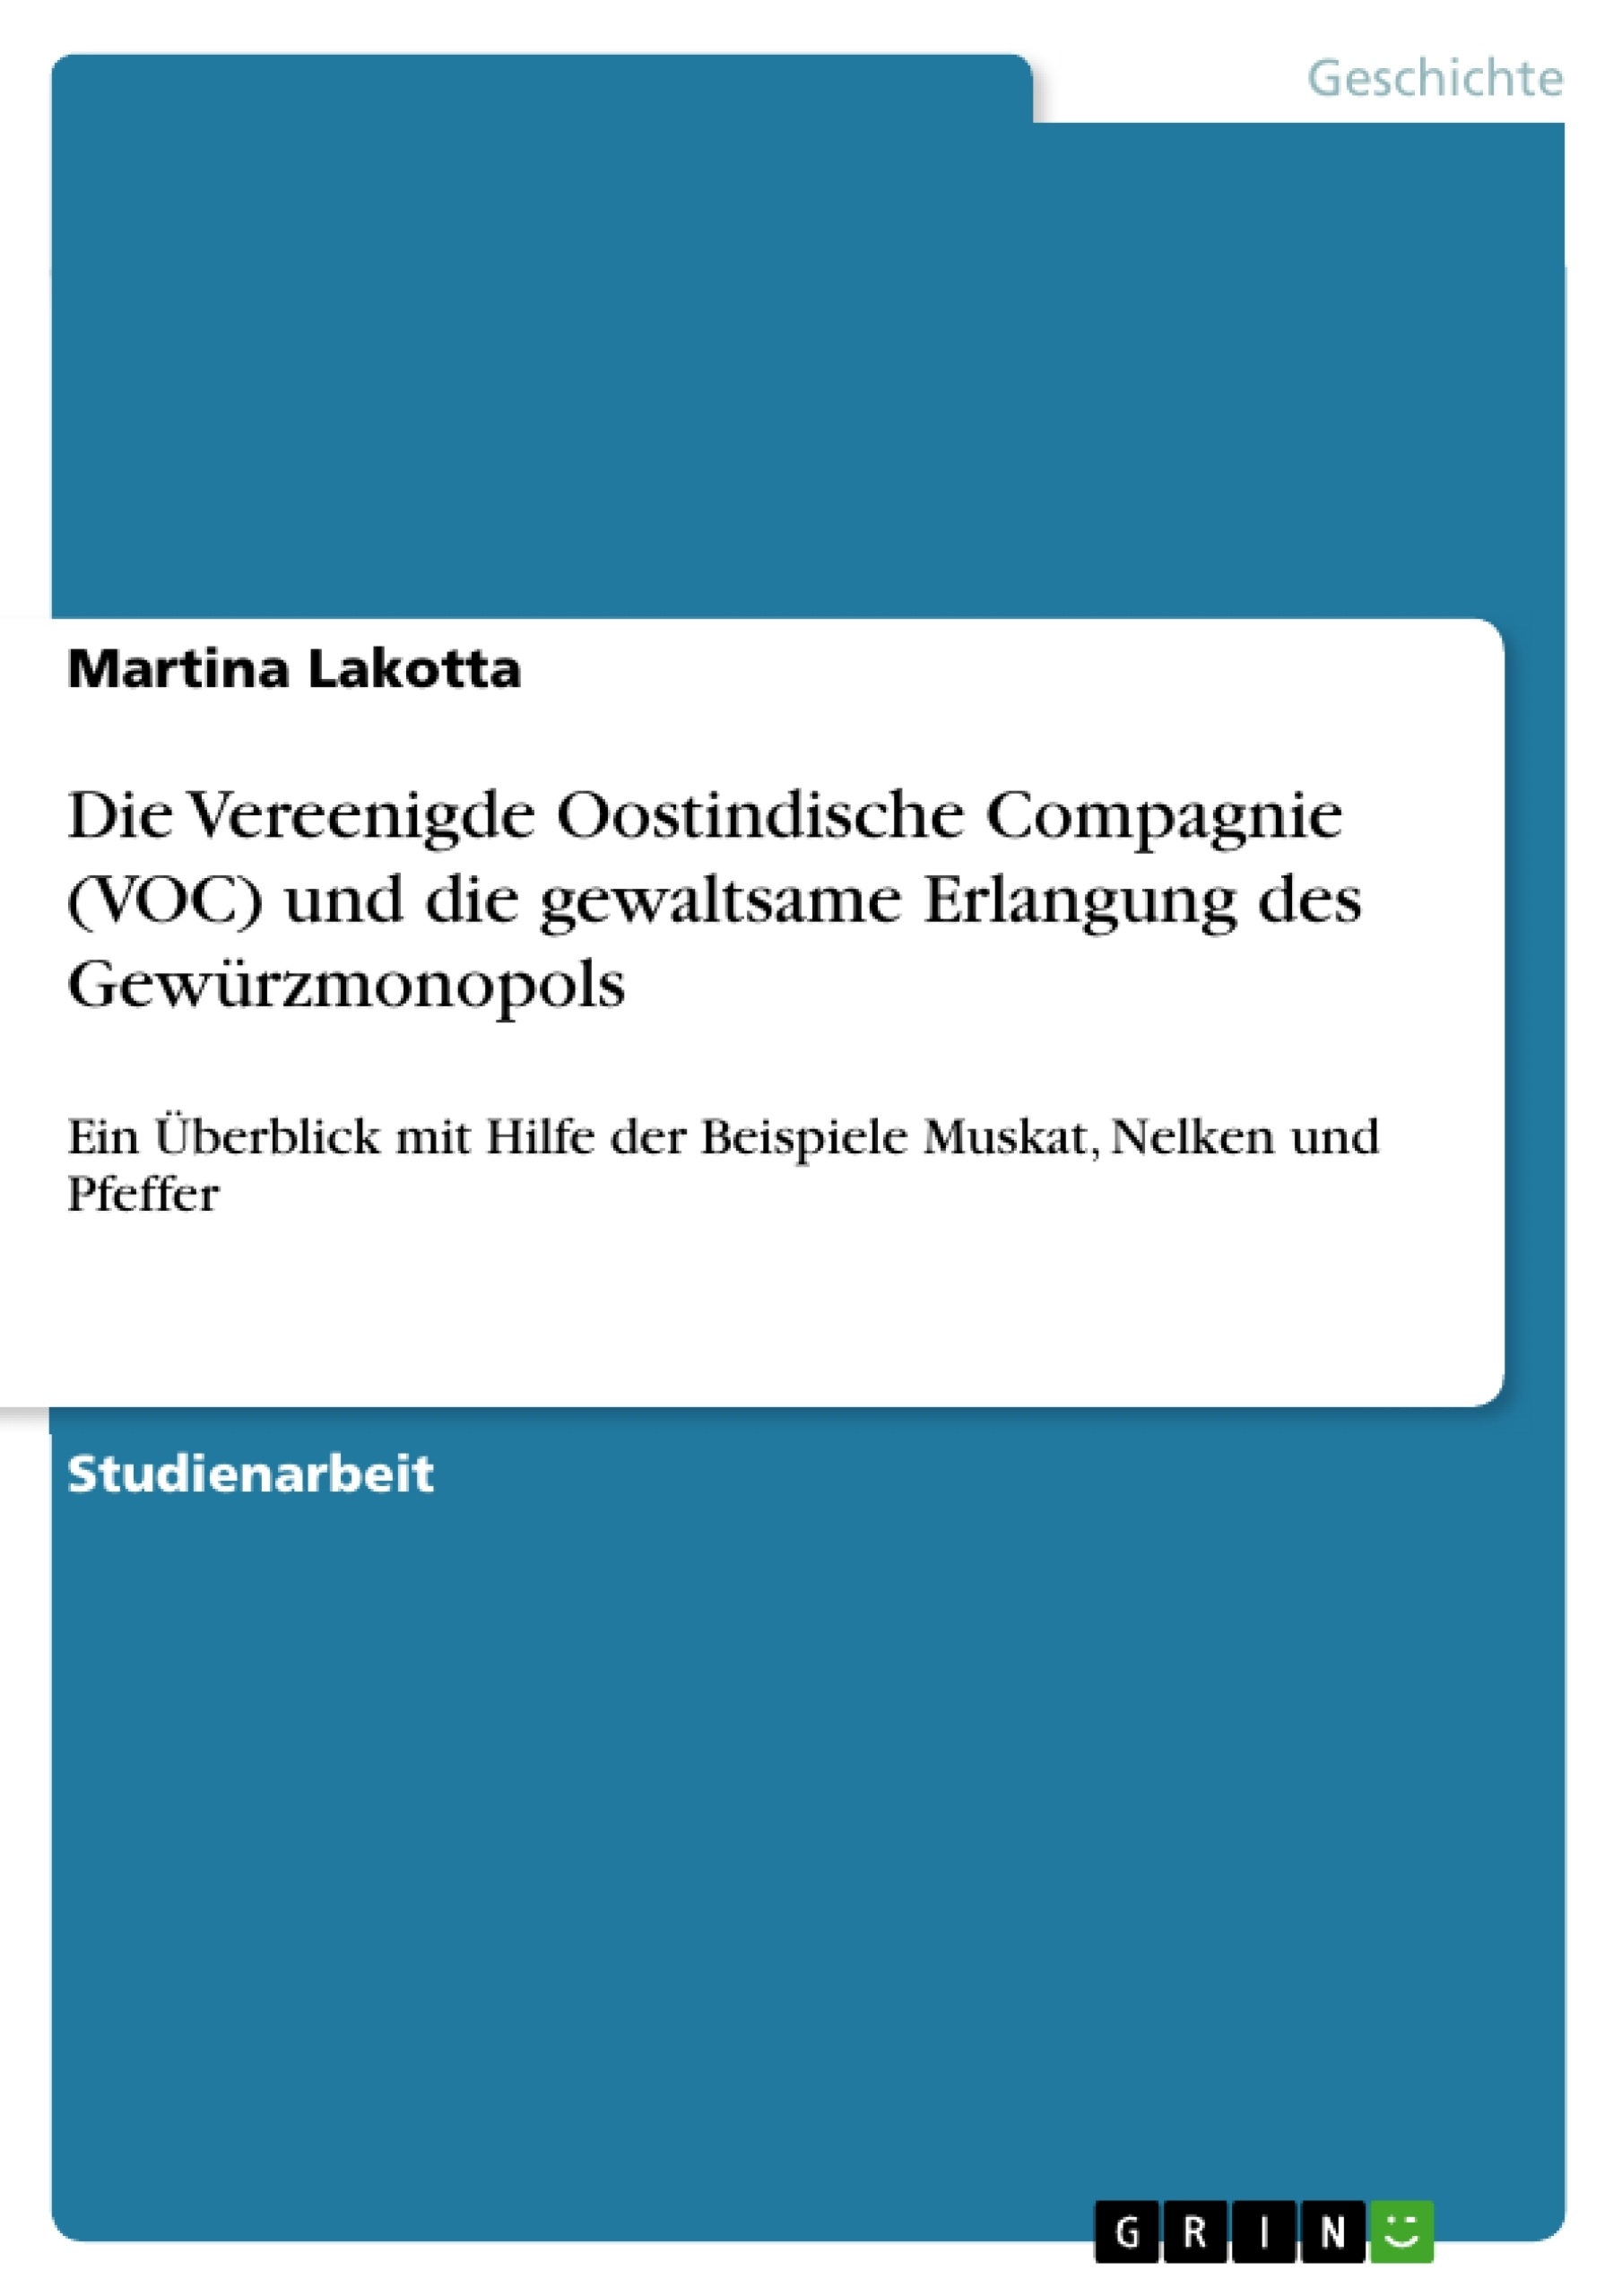 Título: Die Vereenigde Oostindische Compagnie (VOC) und die gewaltsame Erlangung des Gewürzmonopols 